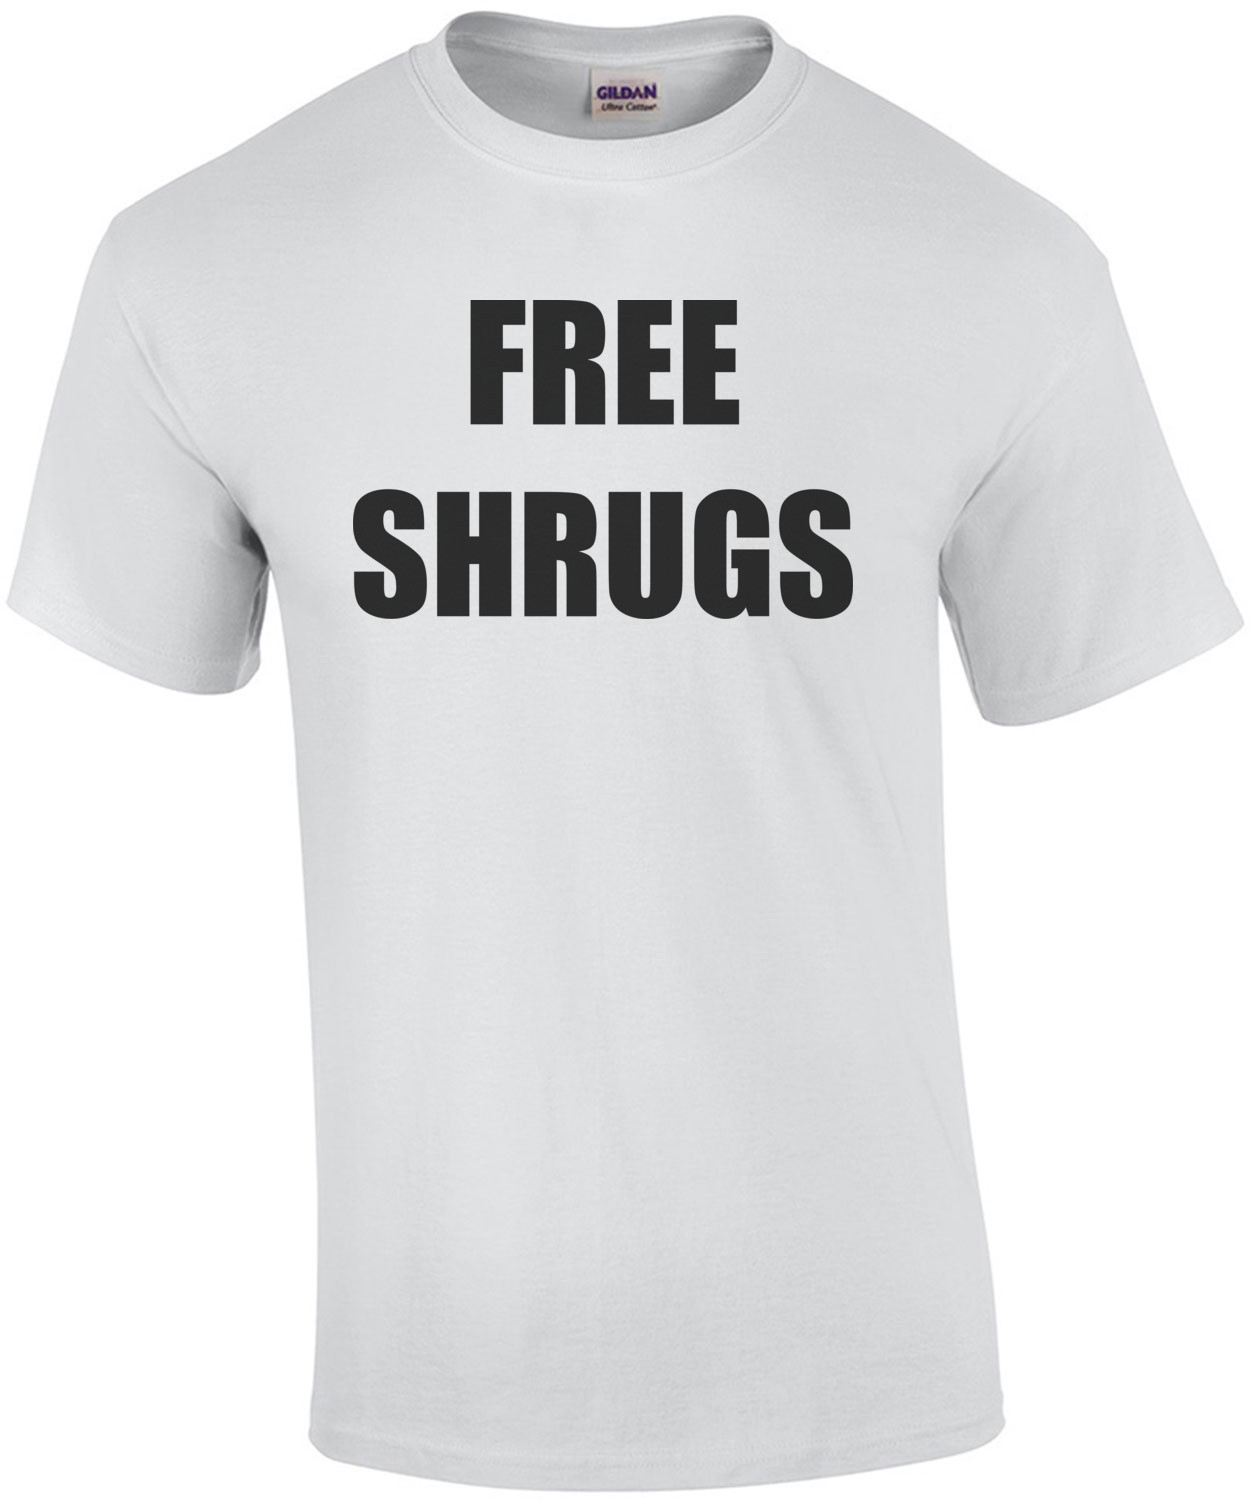 FREE SHRUGS Shirt